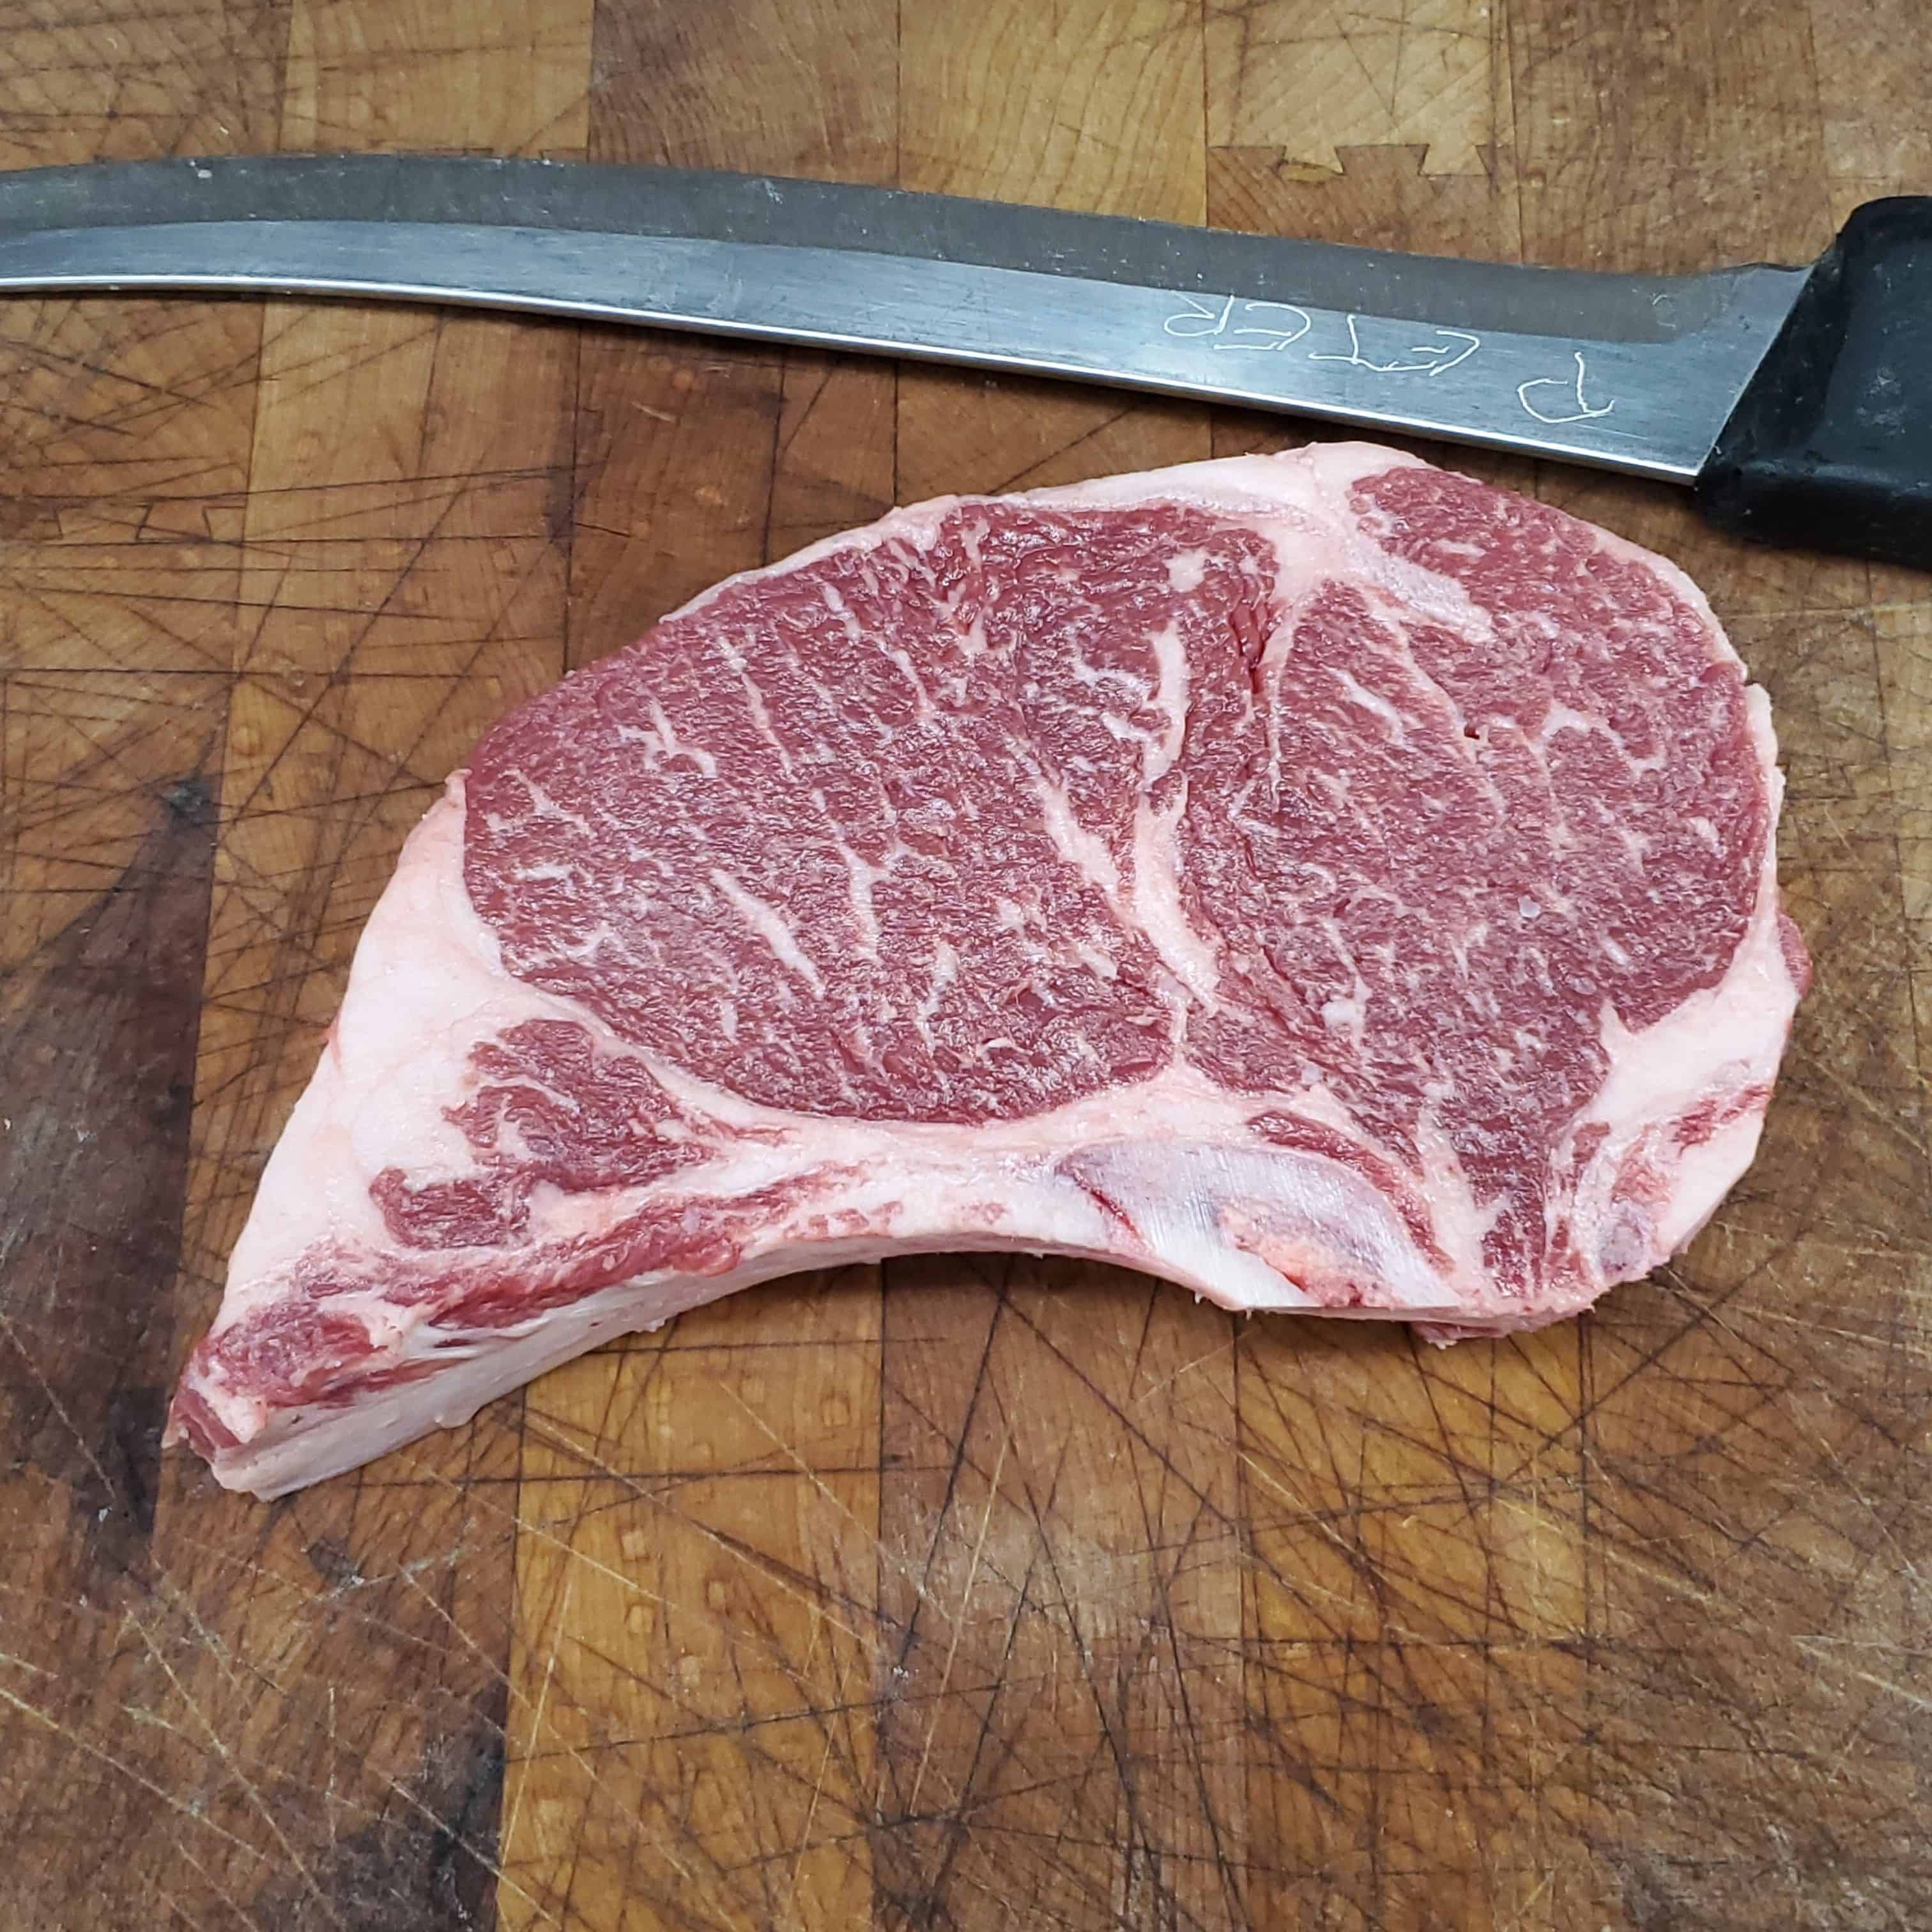 USDA Prime Dry Aged Rib Steak  - Bone In - 16oz